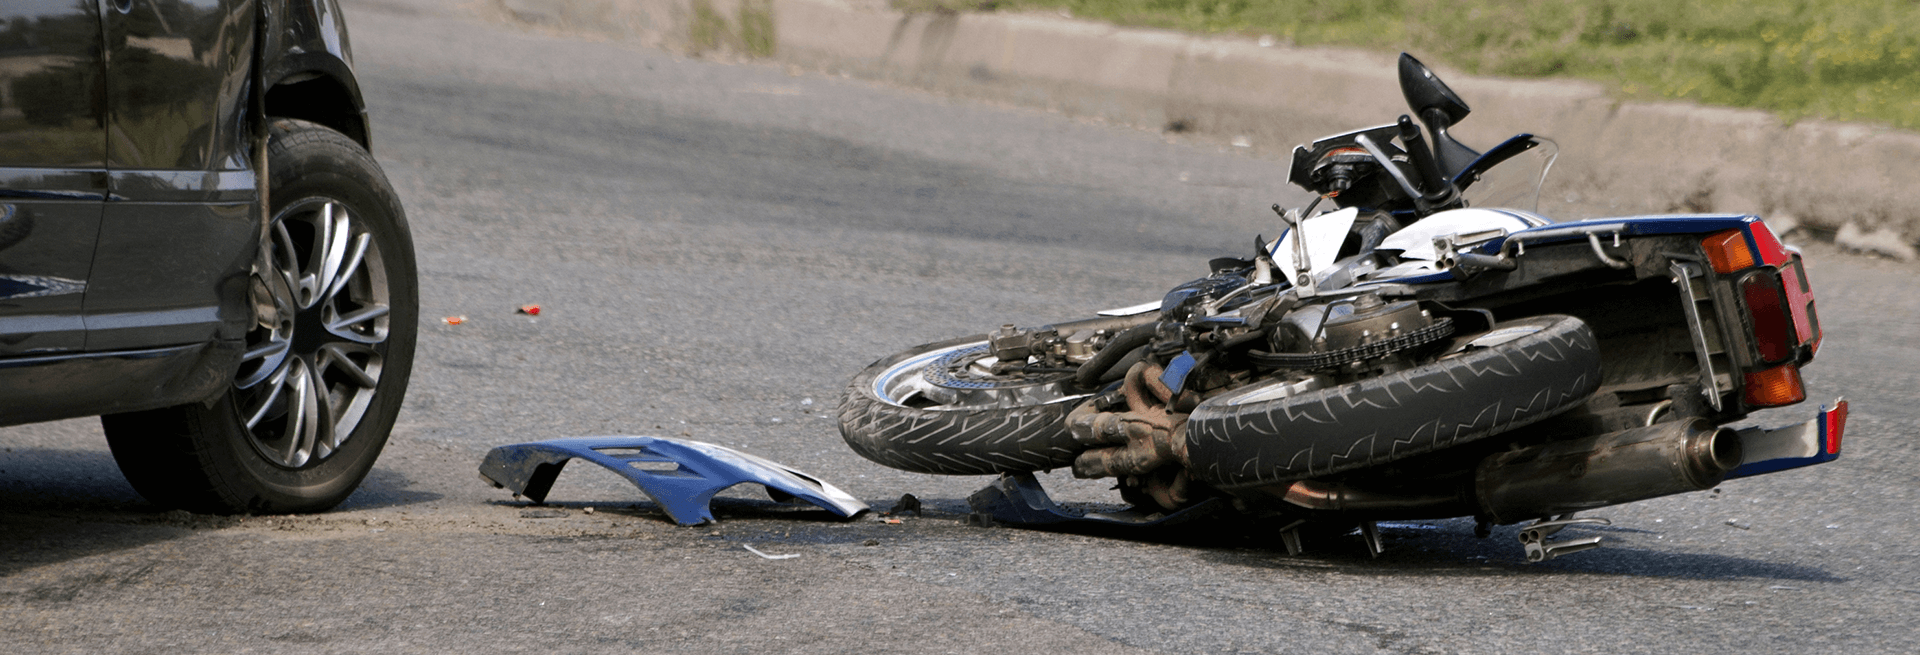 acidentes de motos